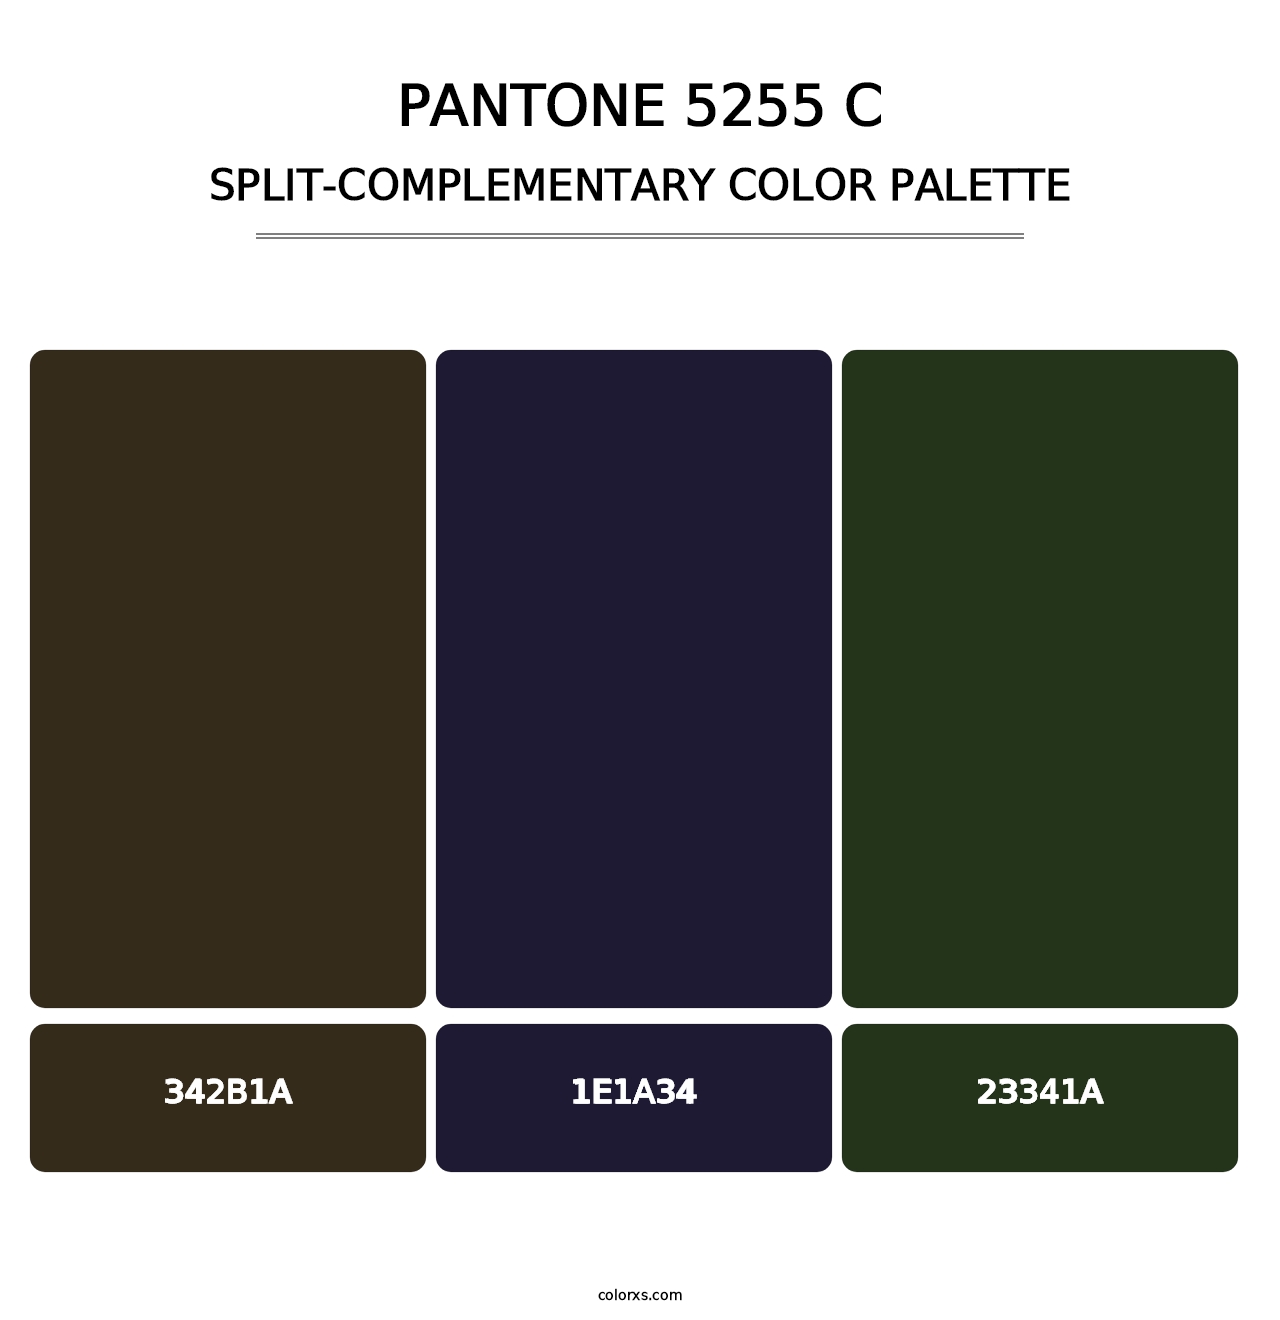 PANTONE 5255 C - Split-Complementary Color Palette